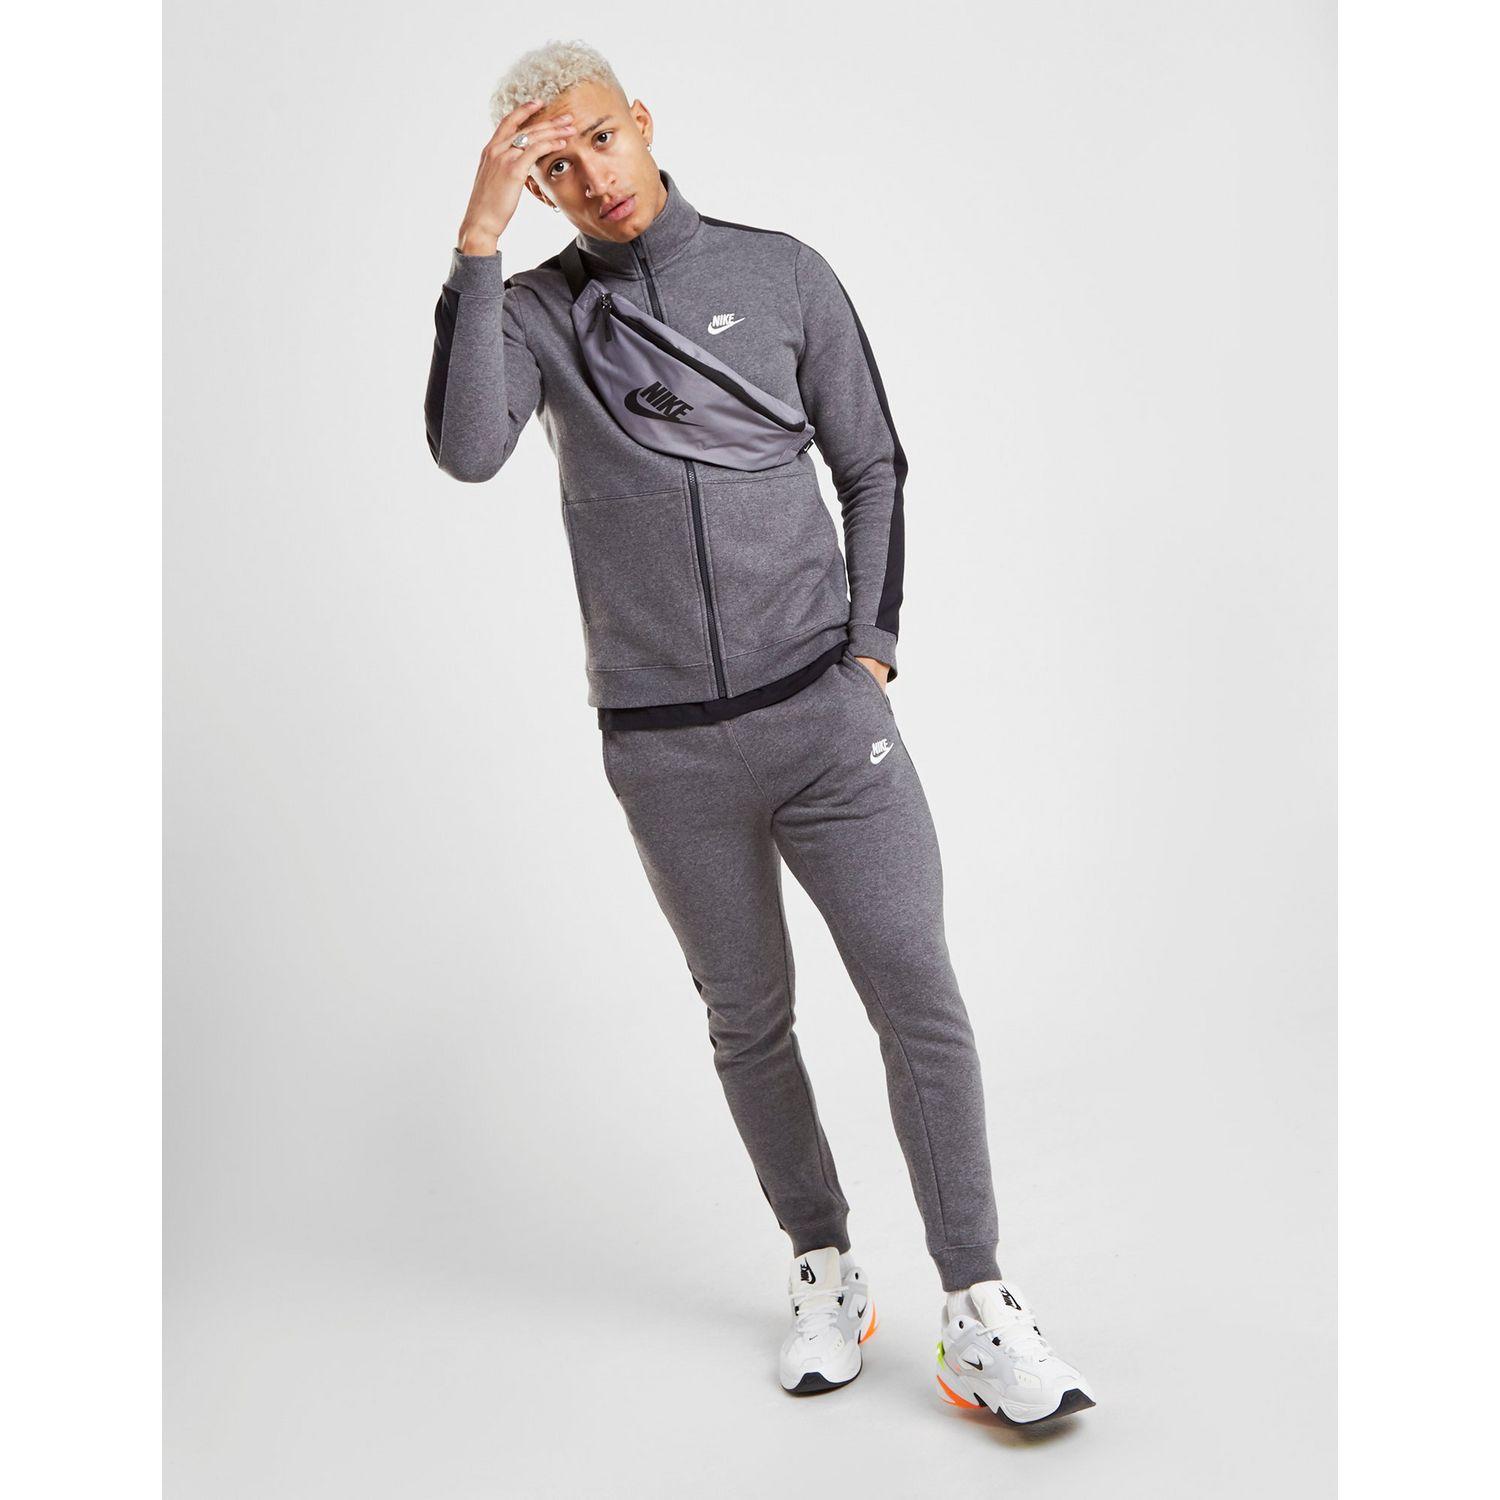 Nike League Fleece Tracksuit in Grey/Black (Gray) for Men - Lyst